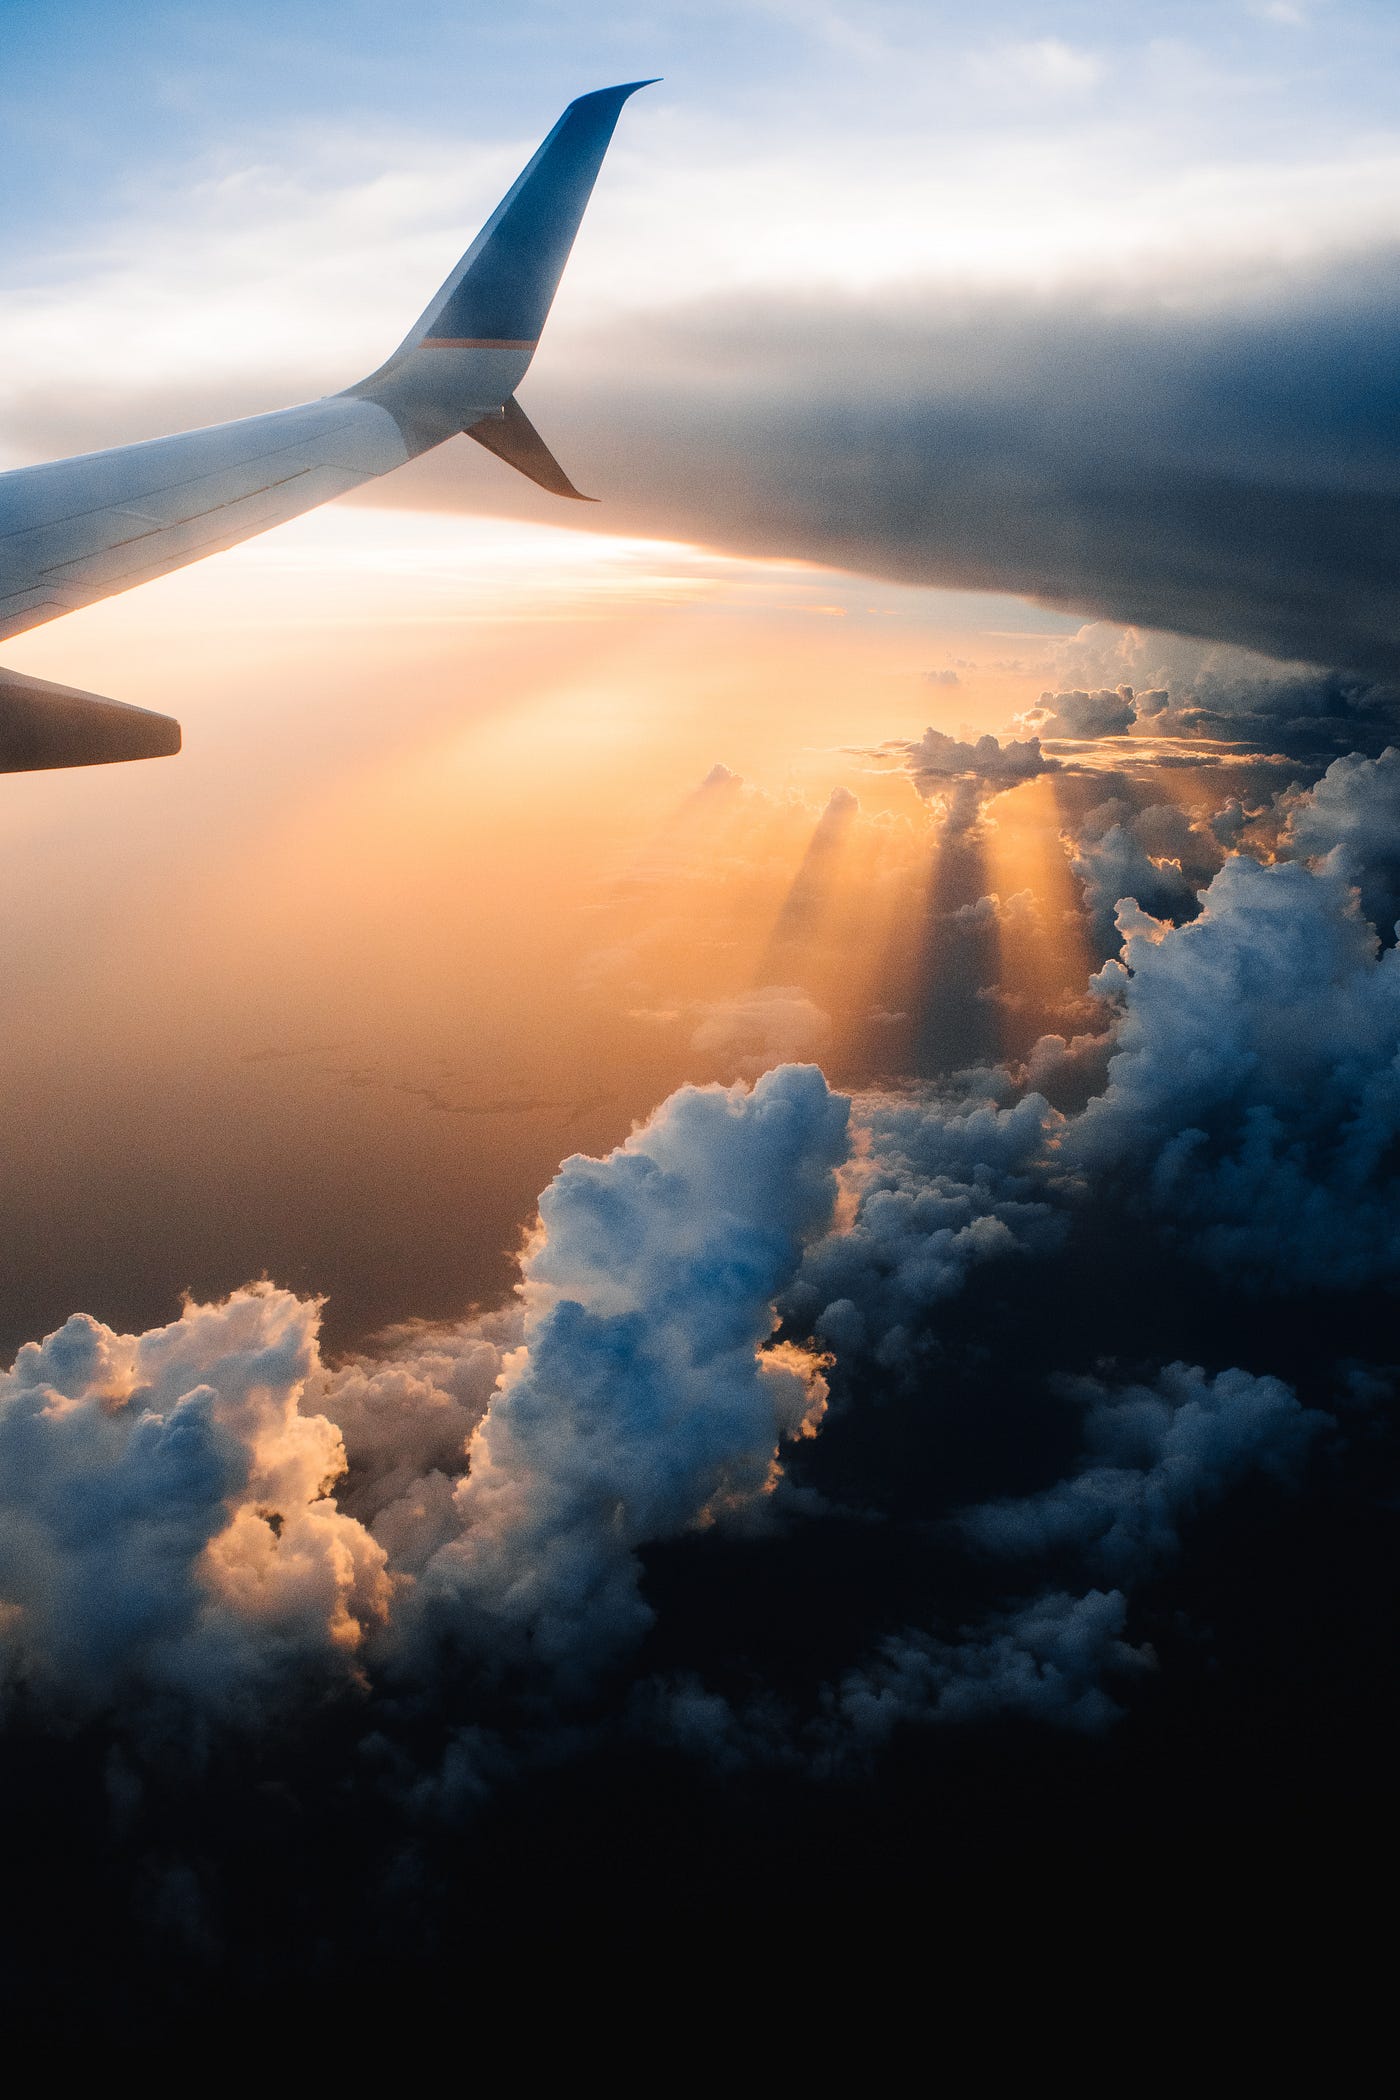 Effortless Air Travel Packing: Expert Tips for Light Journey